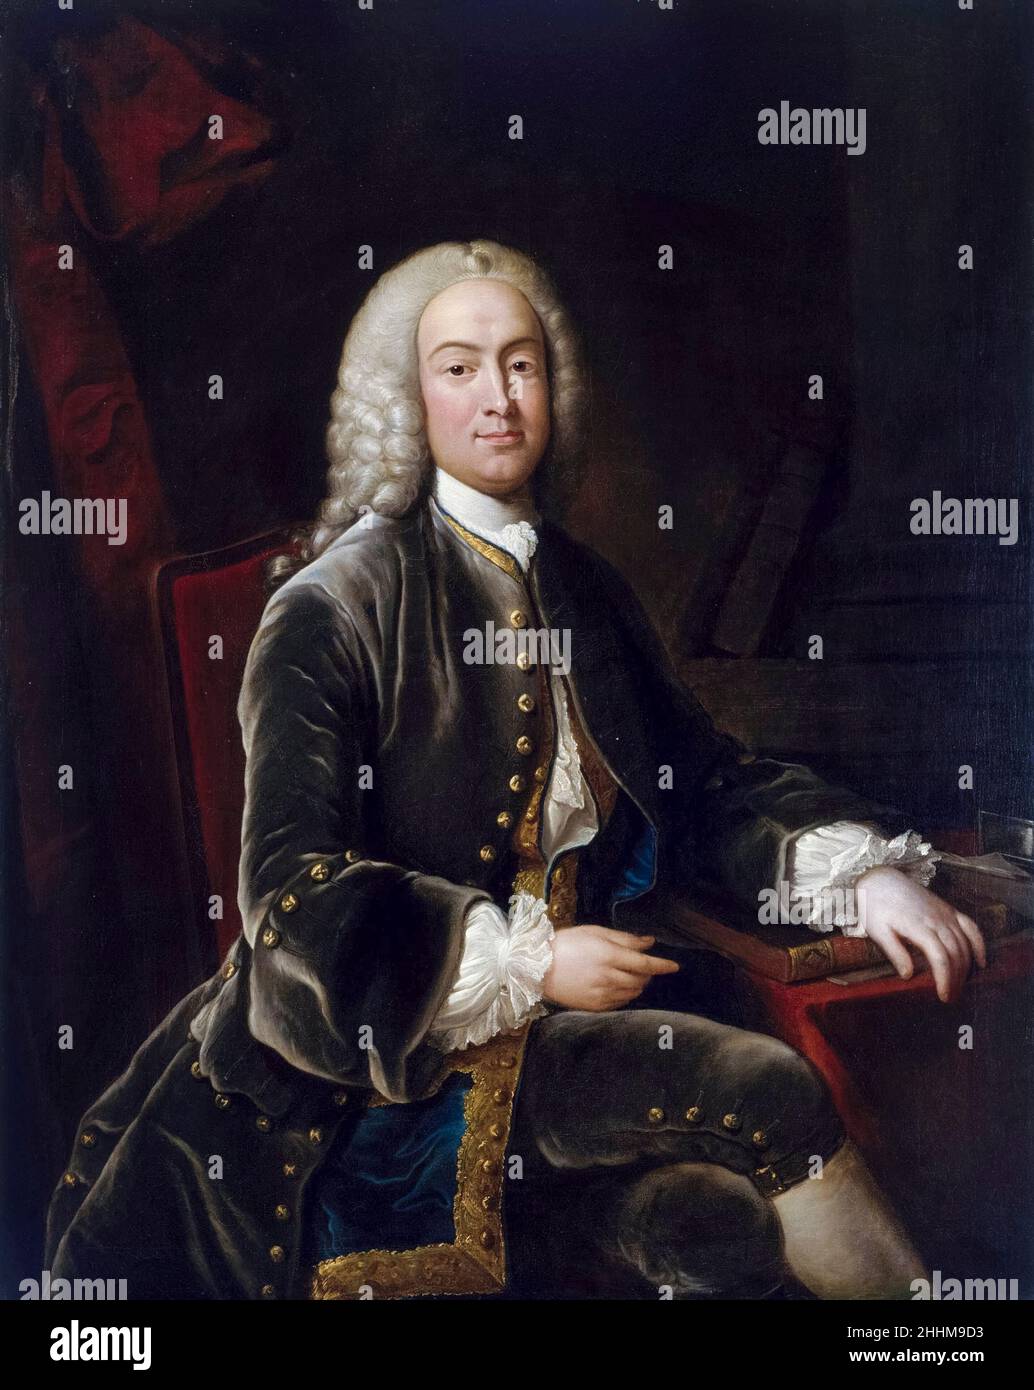 William Murray (1705-1793), 1st Earl of Mansfield war ein britischer Rechtsanwalt, Politiker und Richter, der für seine Reform des englischen Rechts bekannt war, Porträtmalerei von Jean-Baptiste van Loo, 1695-1745 Stockfoto